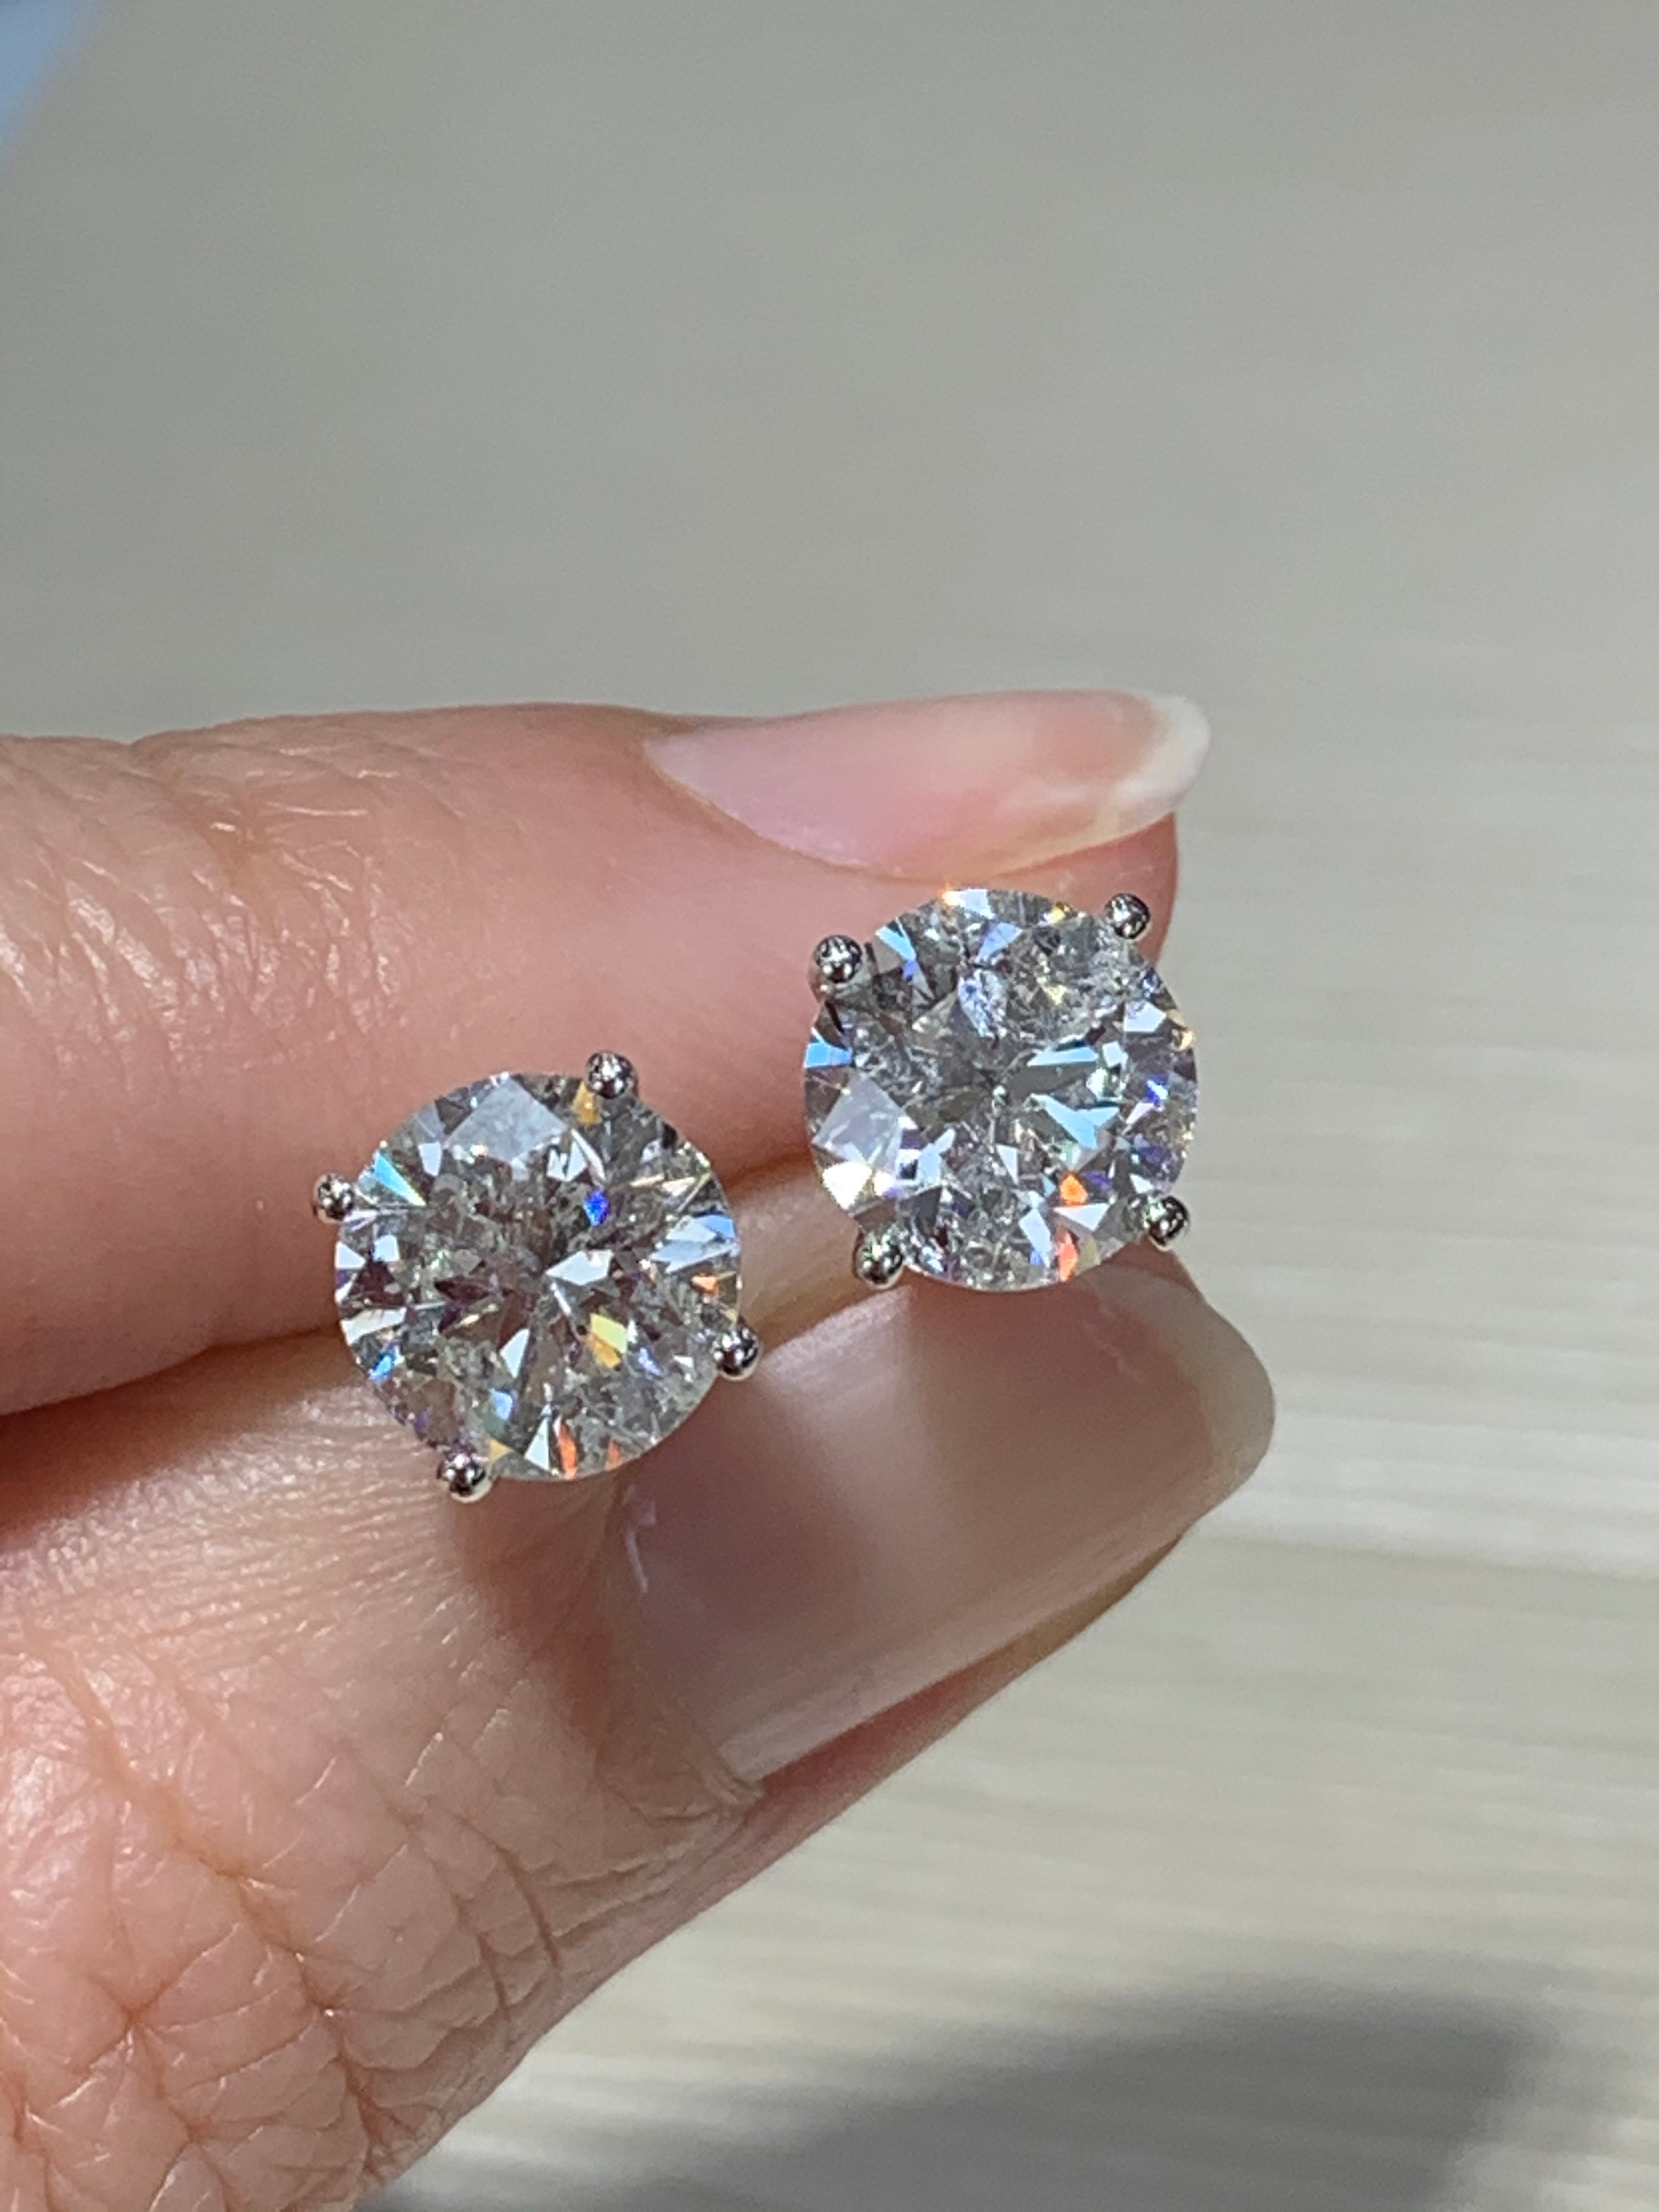 Ladies Diamond Stud Earrings 4.06cts Certified - HANIKEN JEWELERS NEW-YORK